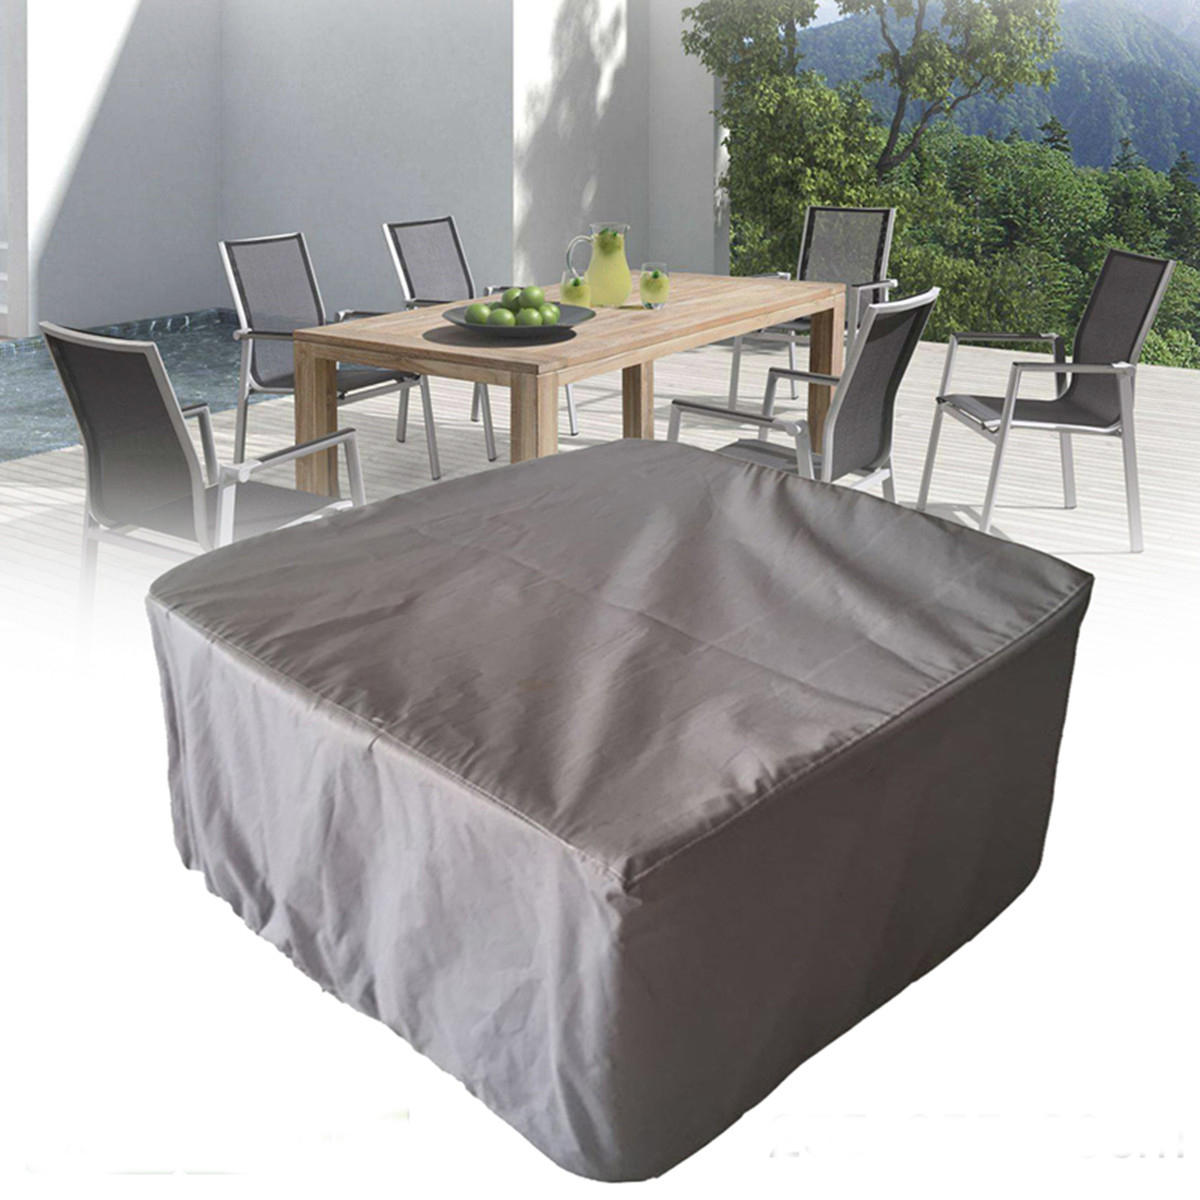 255x255x80CM Garden Yard Patio Table Impermeable Cover al aire libre Muebles Protección contra el polvo